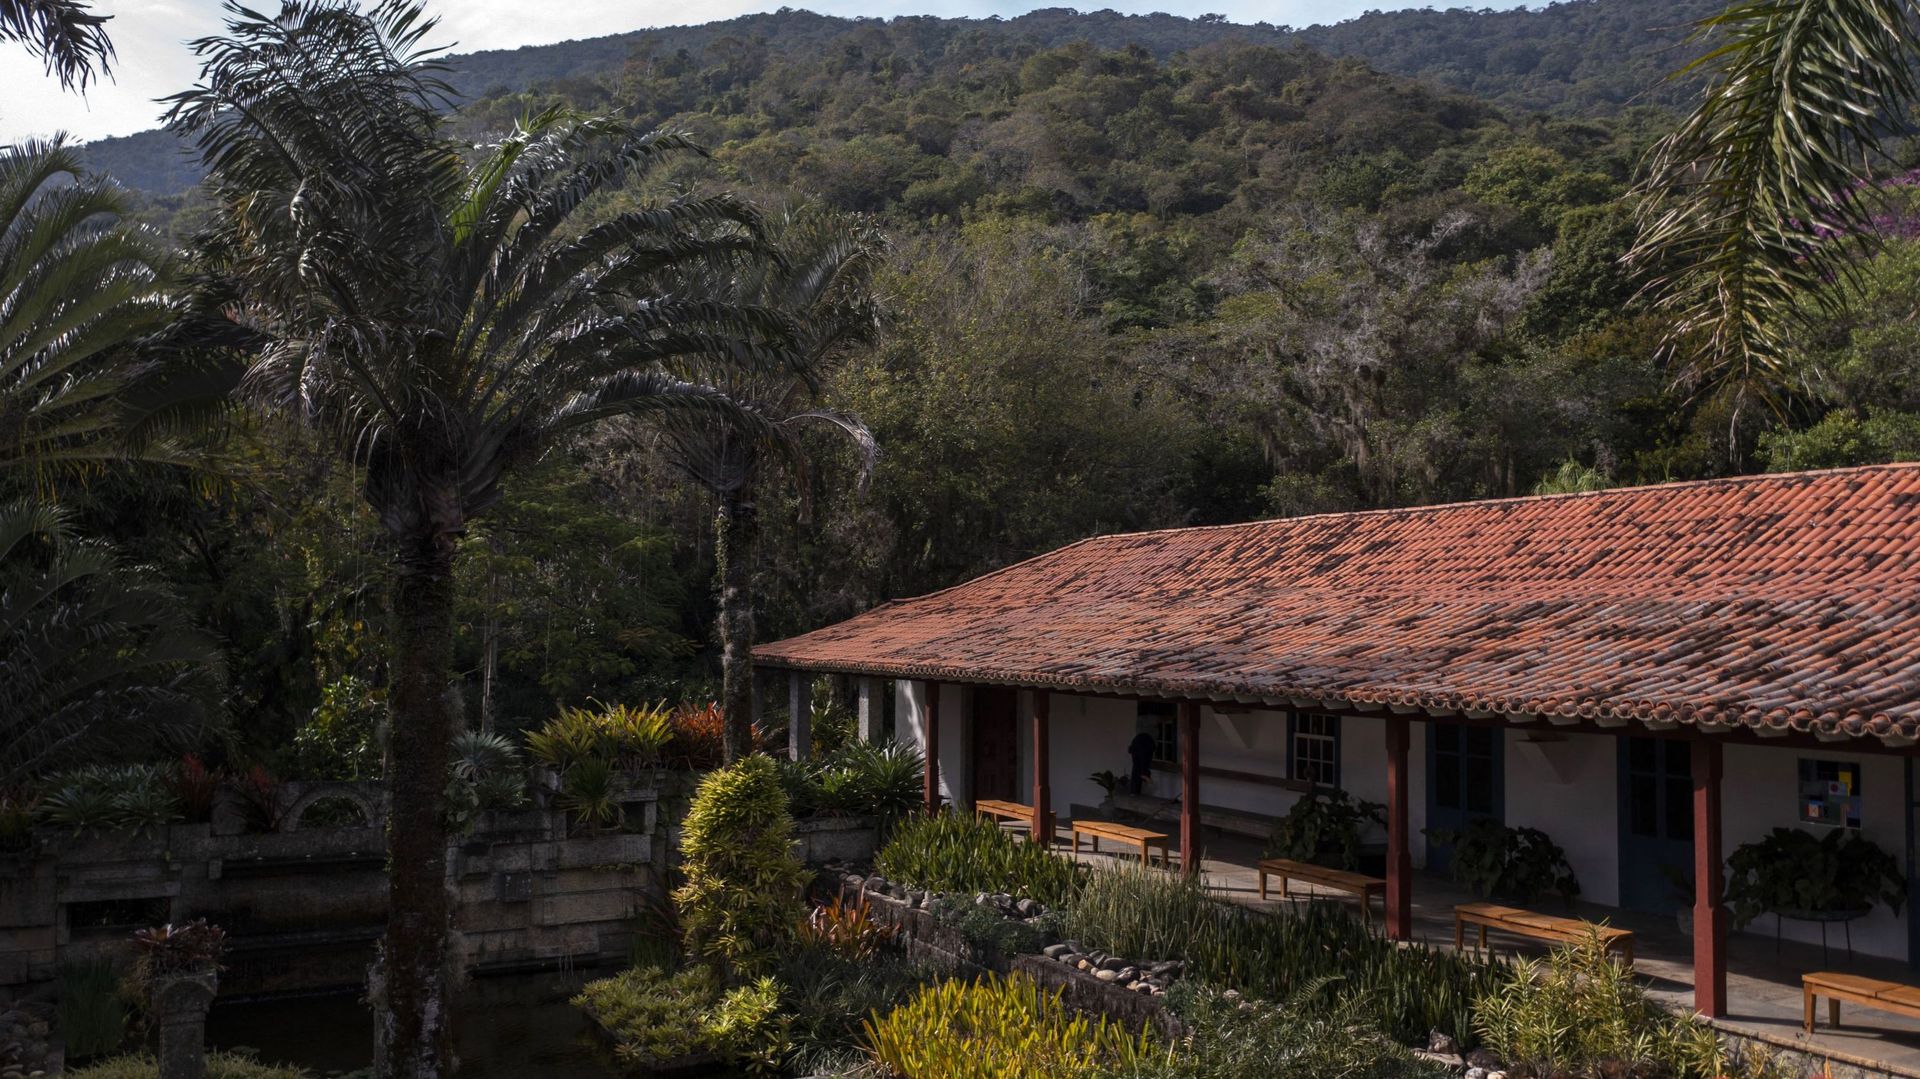 Dans cette photo d’archive prise le 14 septembre 2017 de la maison de l’architecte paysagiste brésilien Roberto Burle Marx (1909-1994) sur le site Burle Marx à Rio de Janeiro, Brésil.